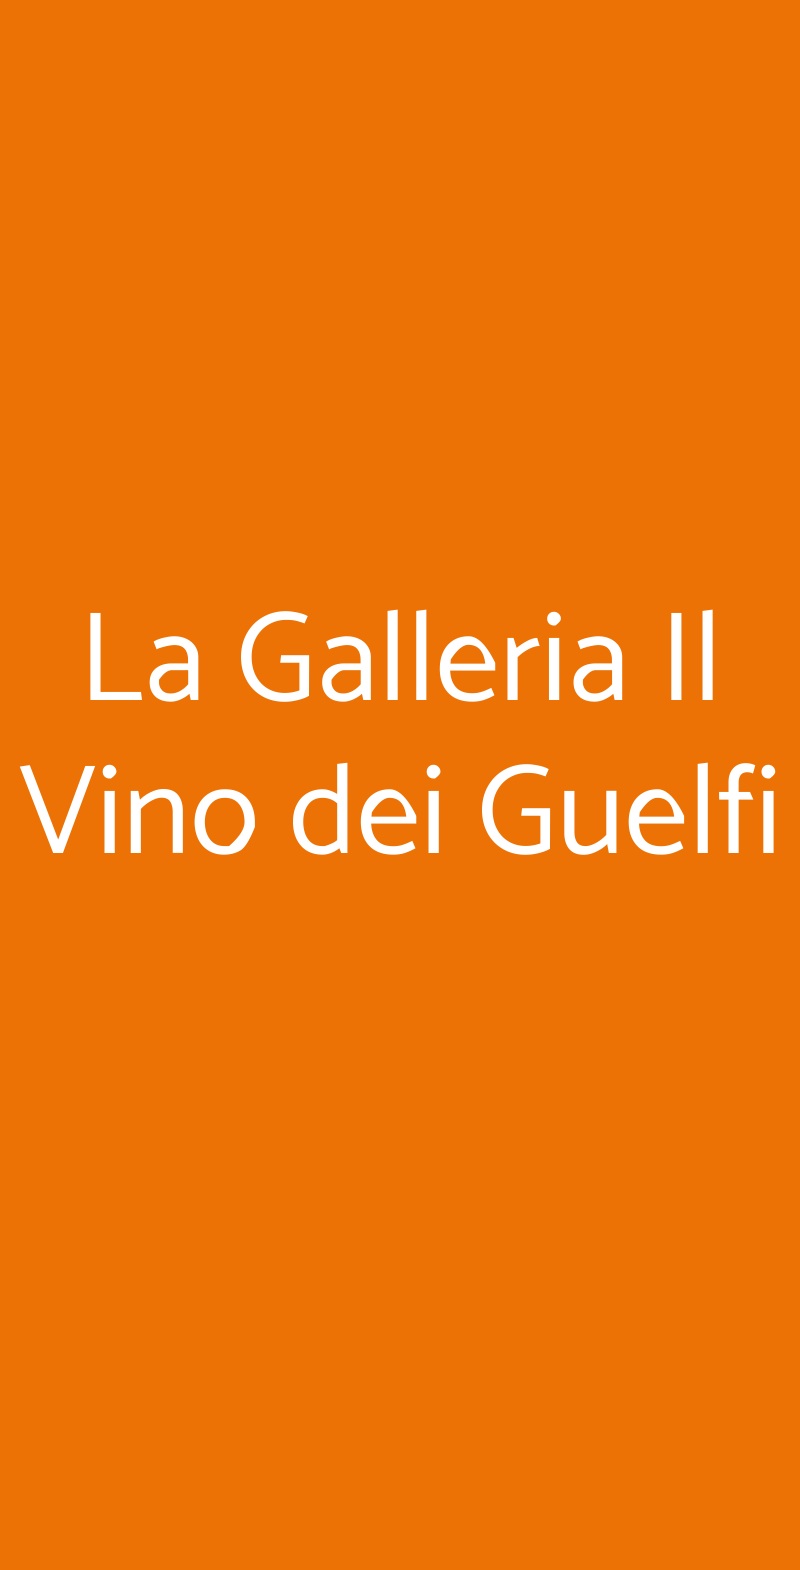 La Galleria Il Vino dei Guelfi Firenze menù 1 pagina